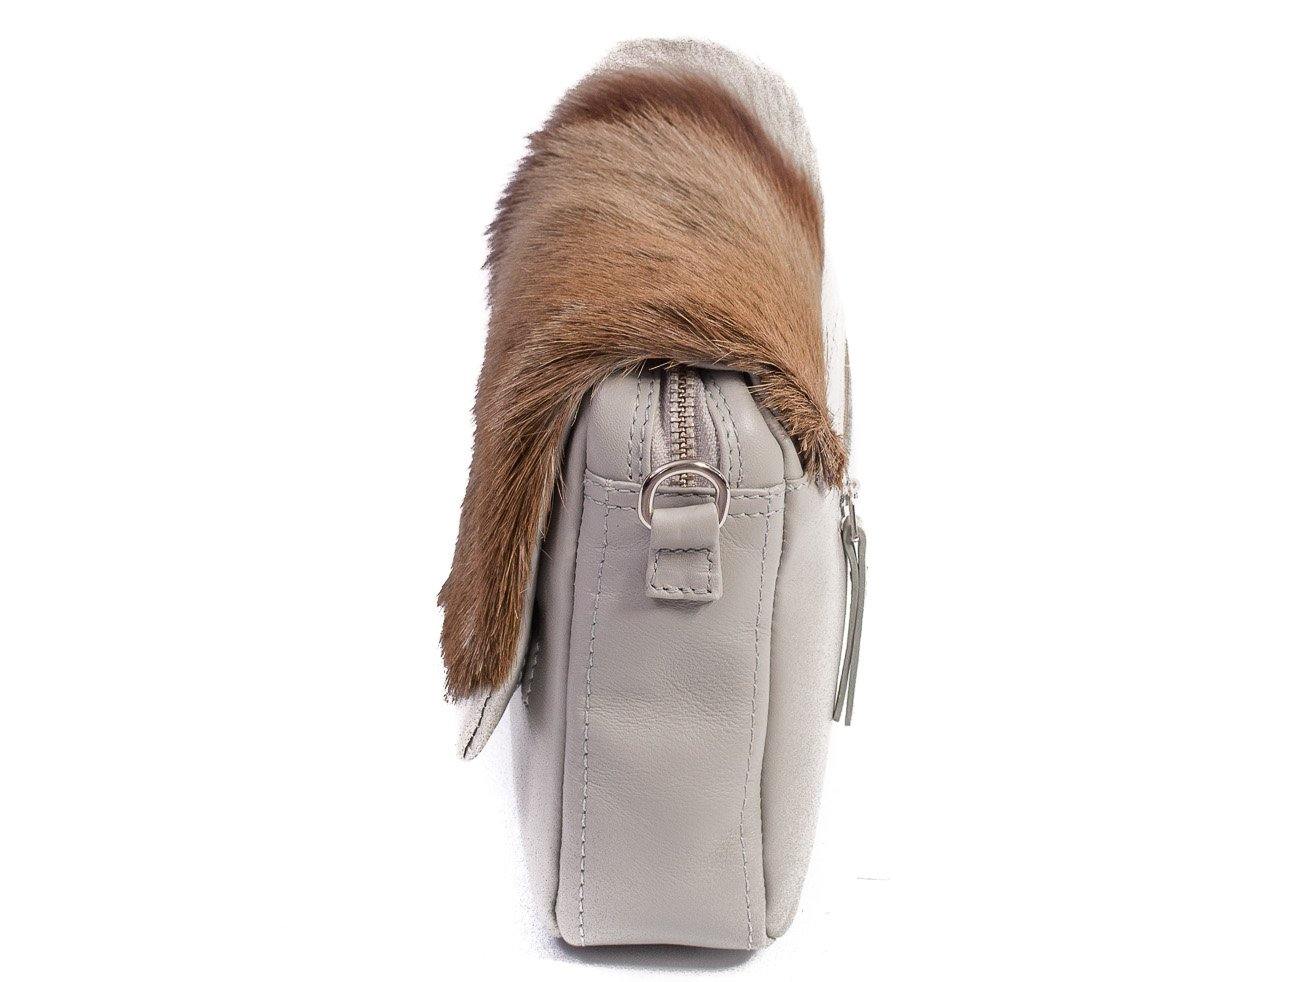 sherene melinda springbok hair-on-hide earth leather shoulder bag Stripe side